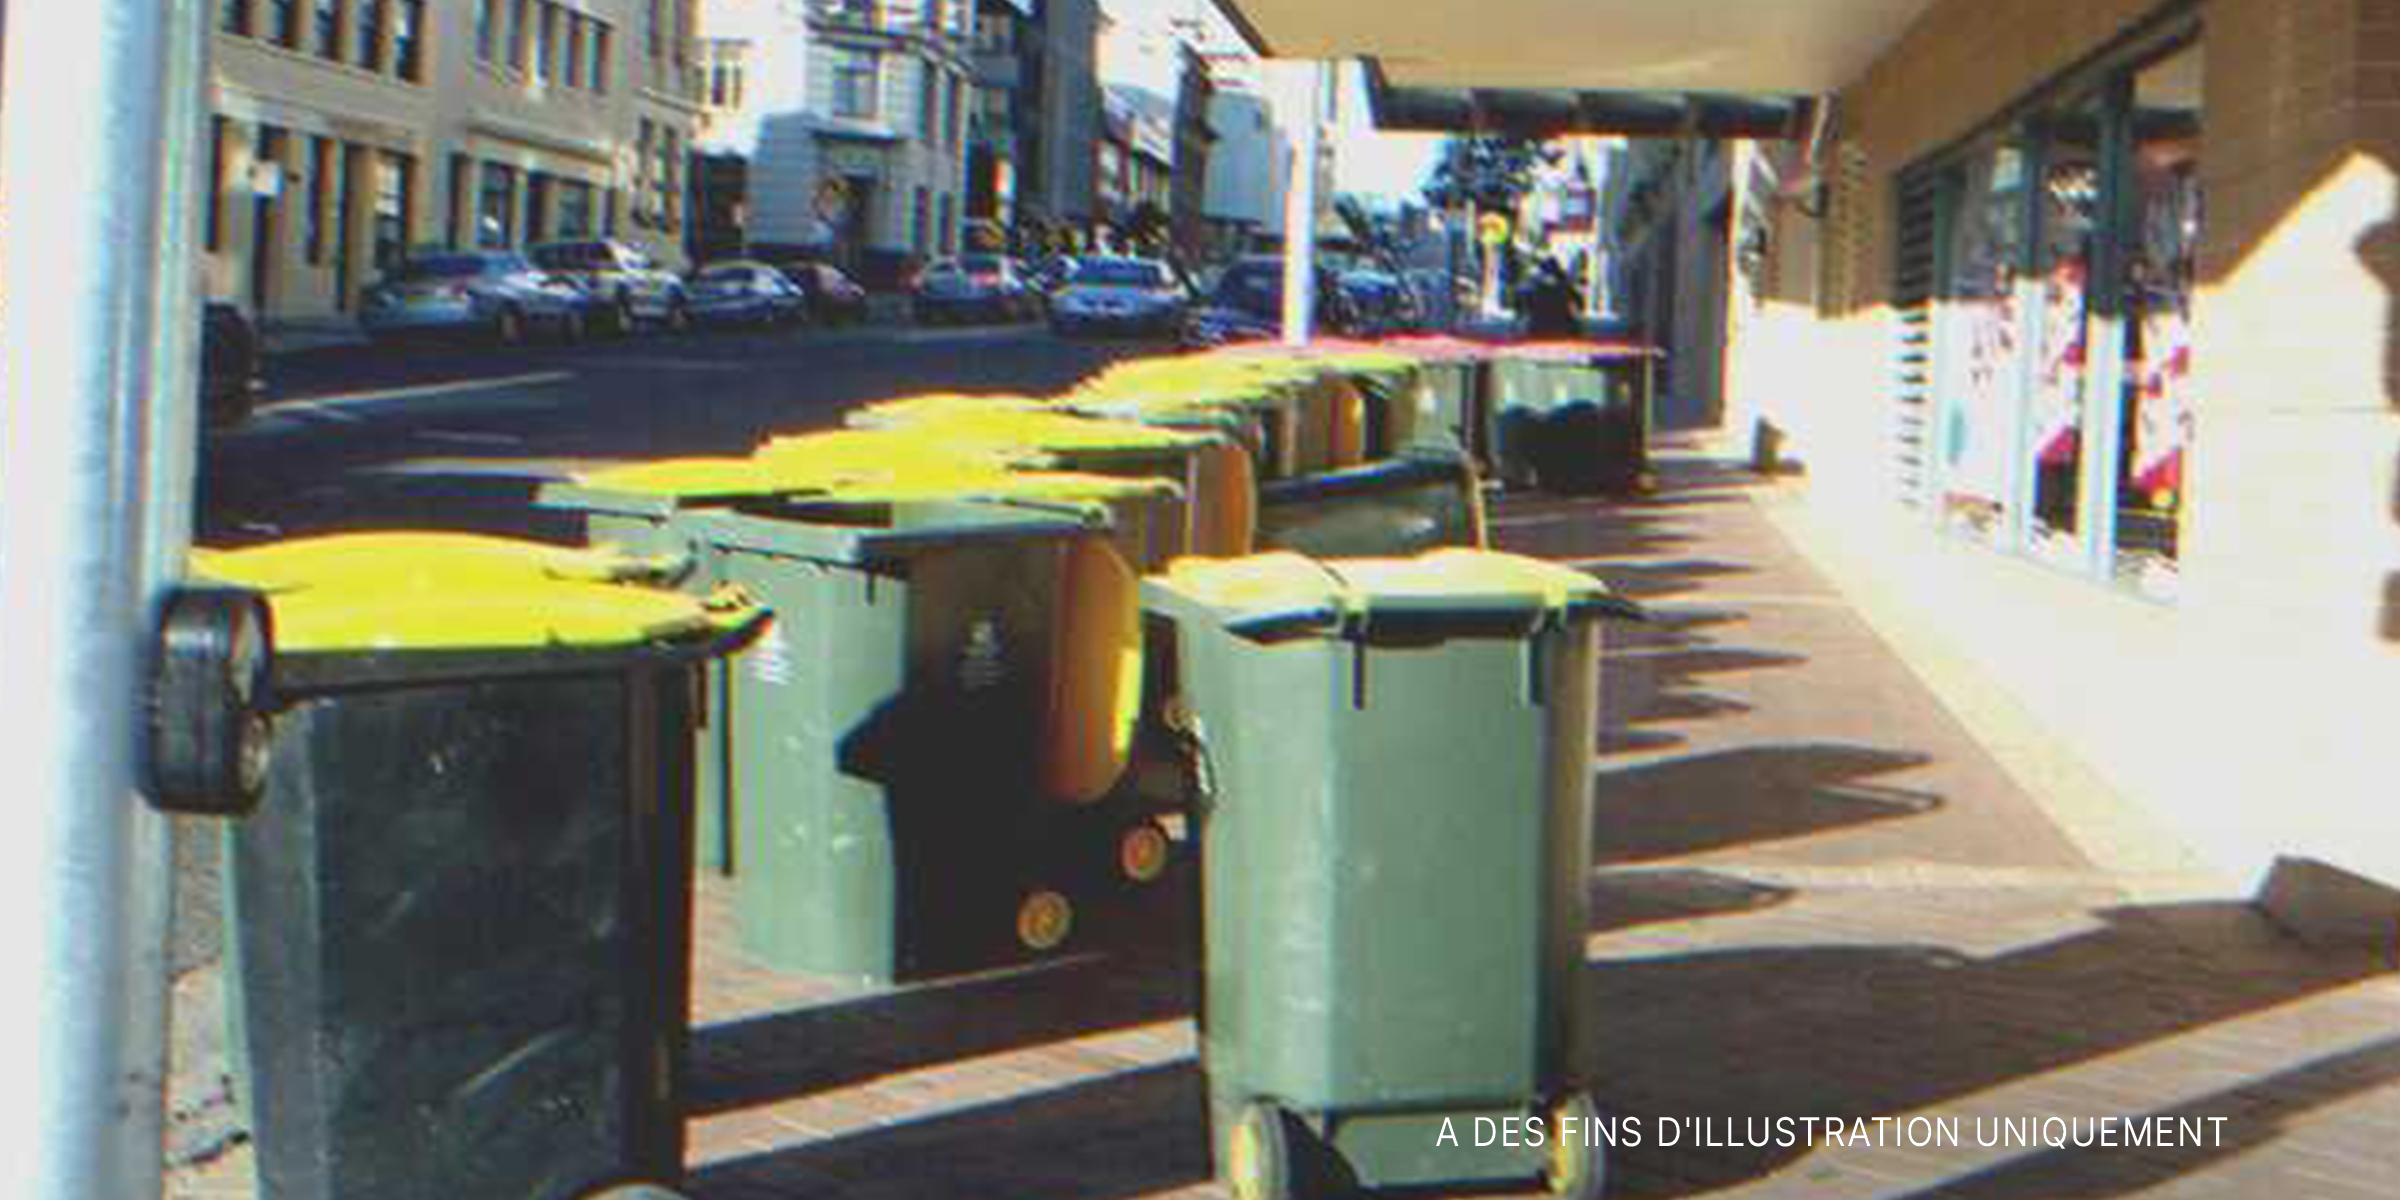 Des poubelles placées devant un magasin de jouets | Source : Flickr / Ben Helps